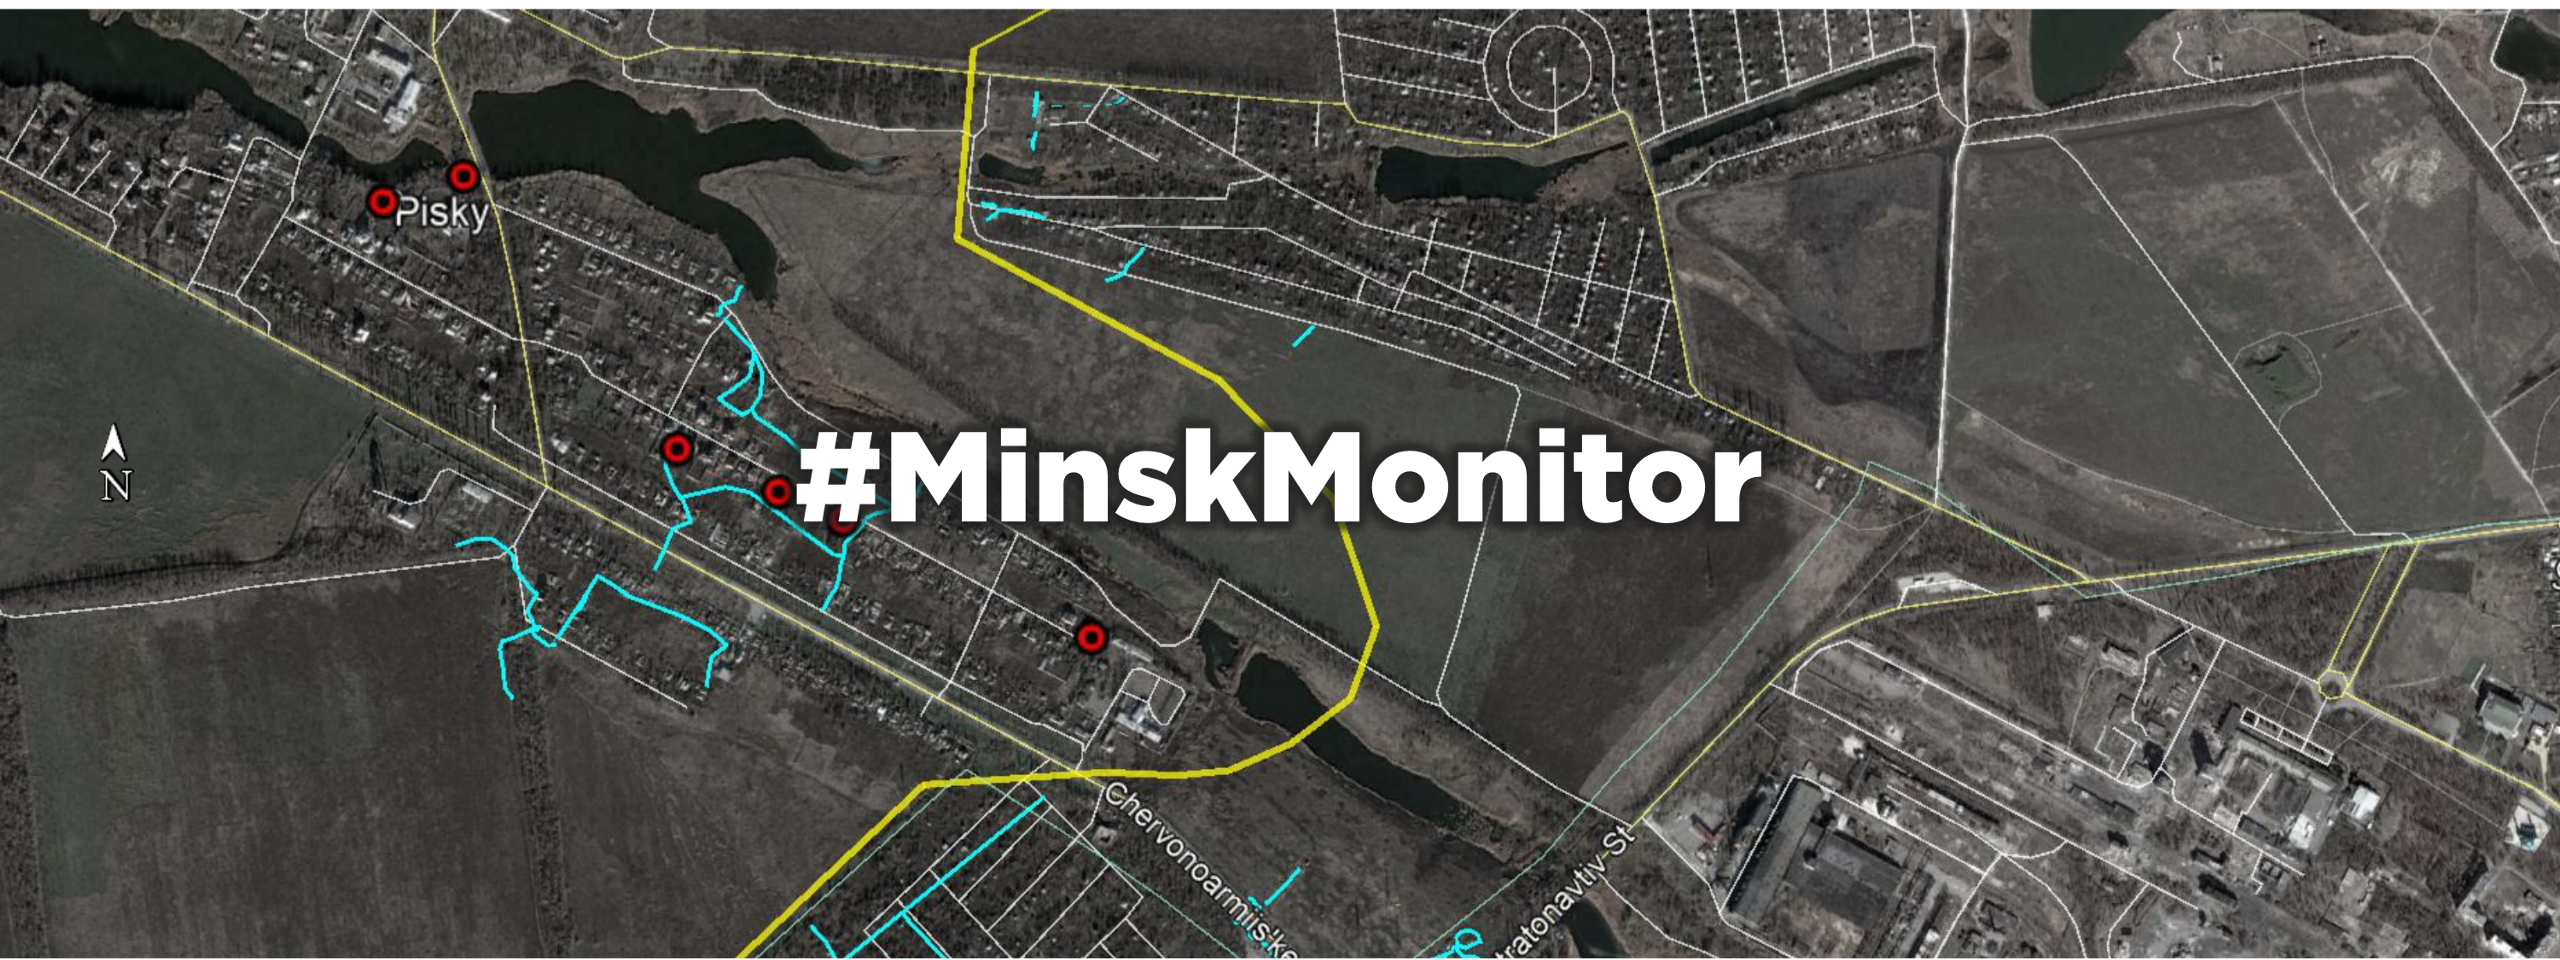 #MinskMonitor: Pisky Under Fire